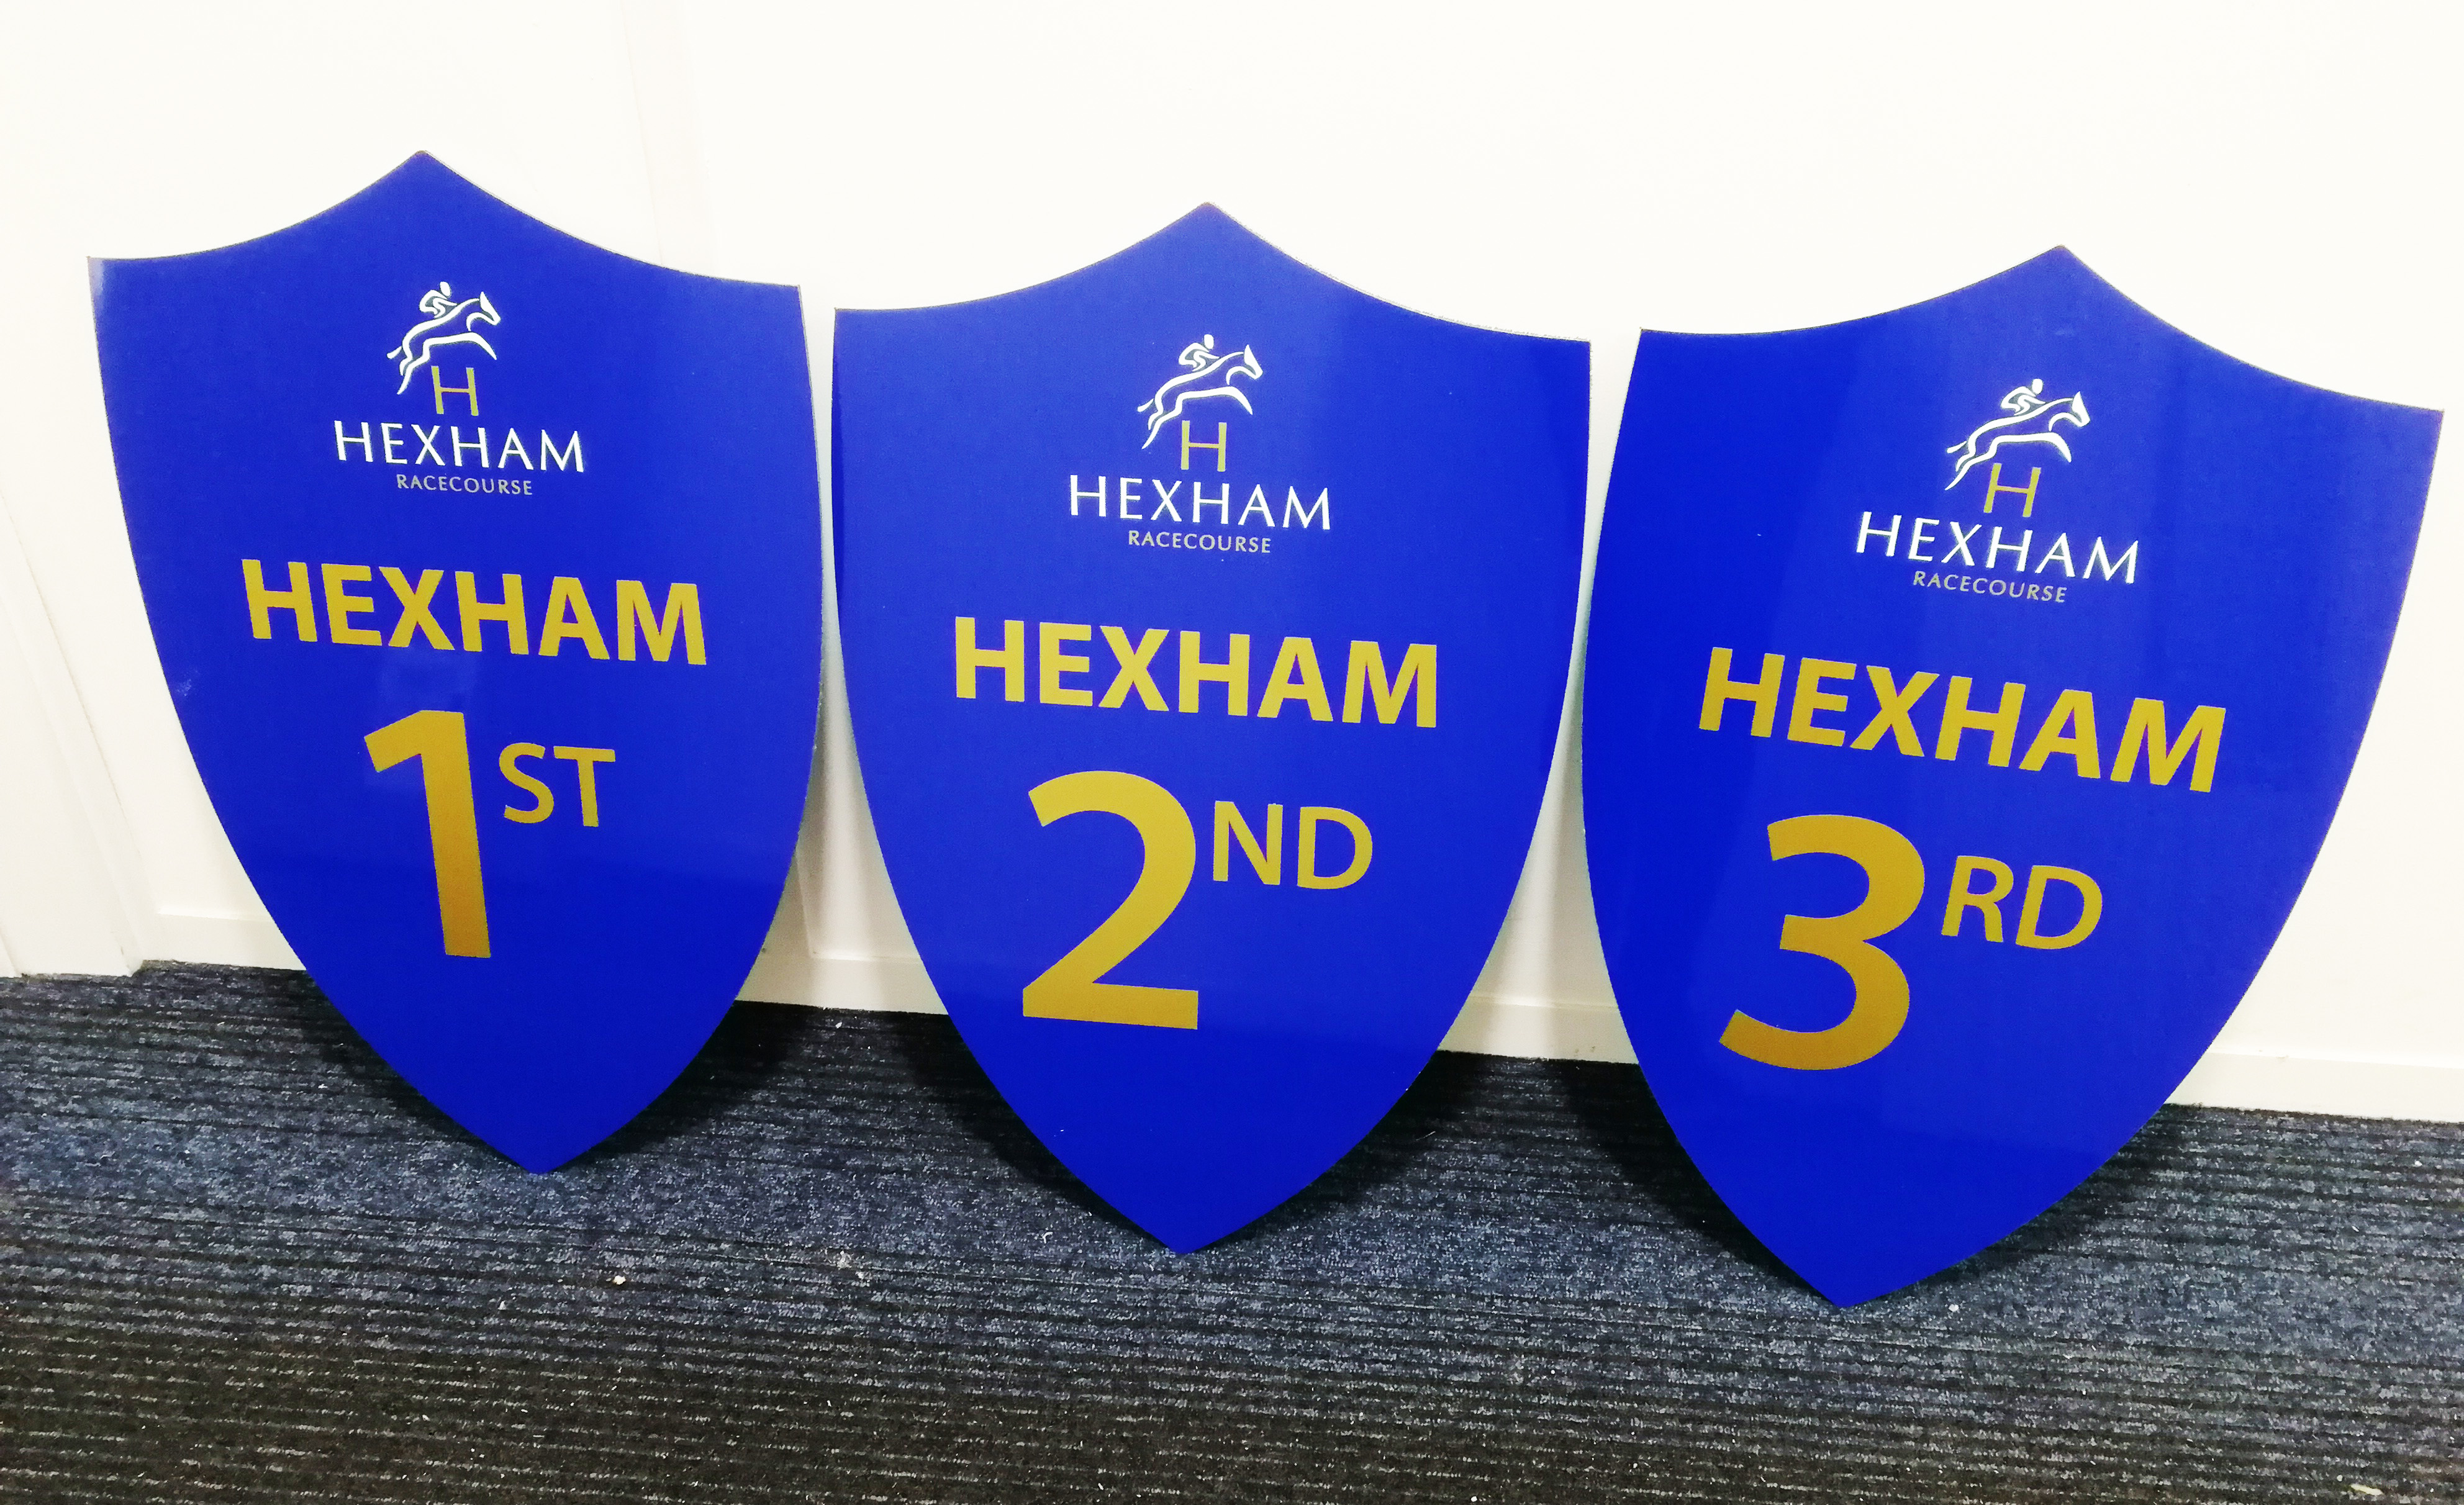 Hexham-Racecourse-signs-1